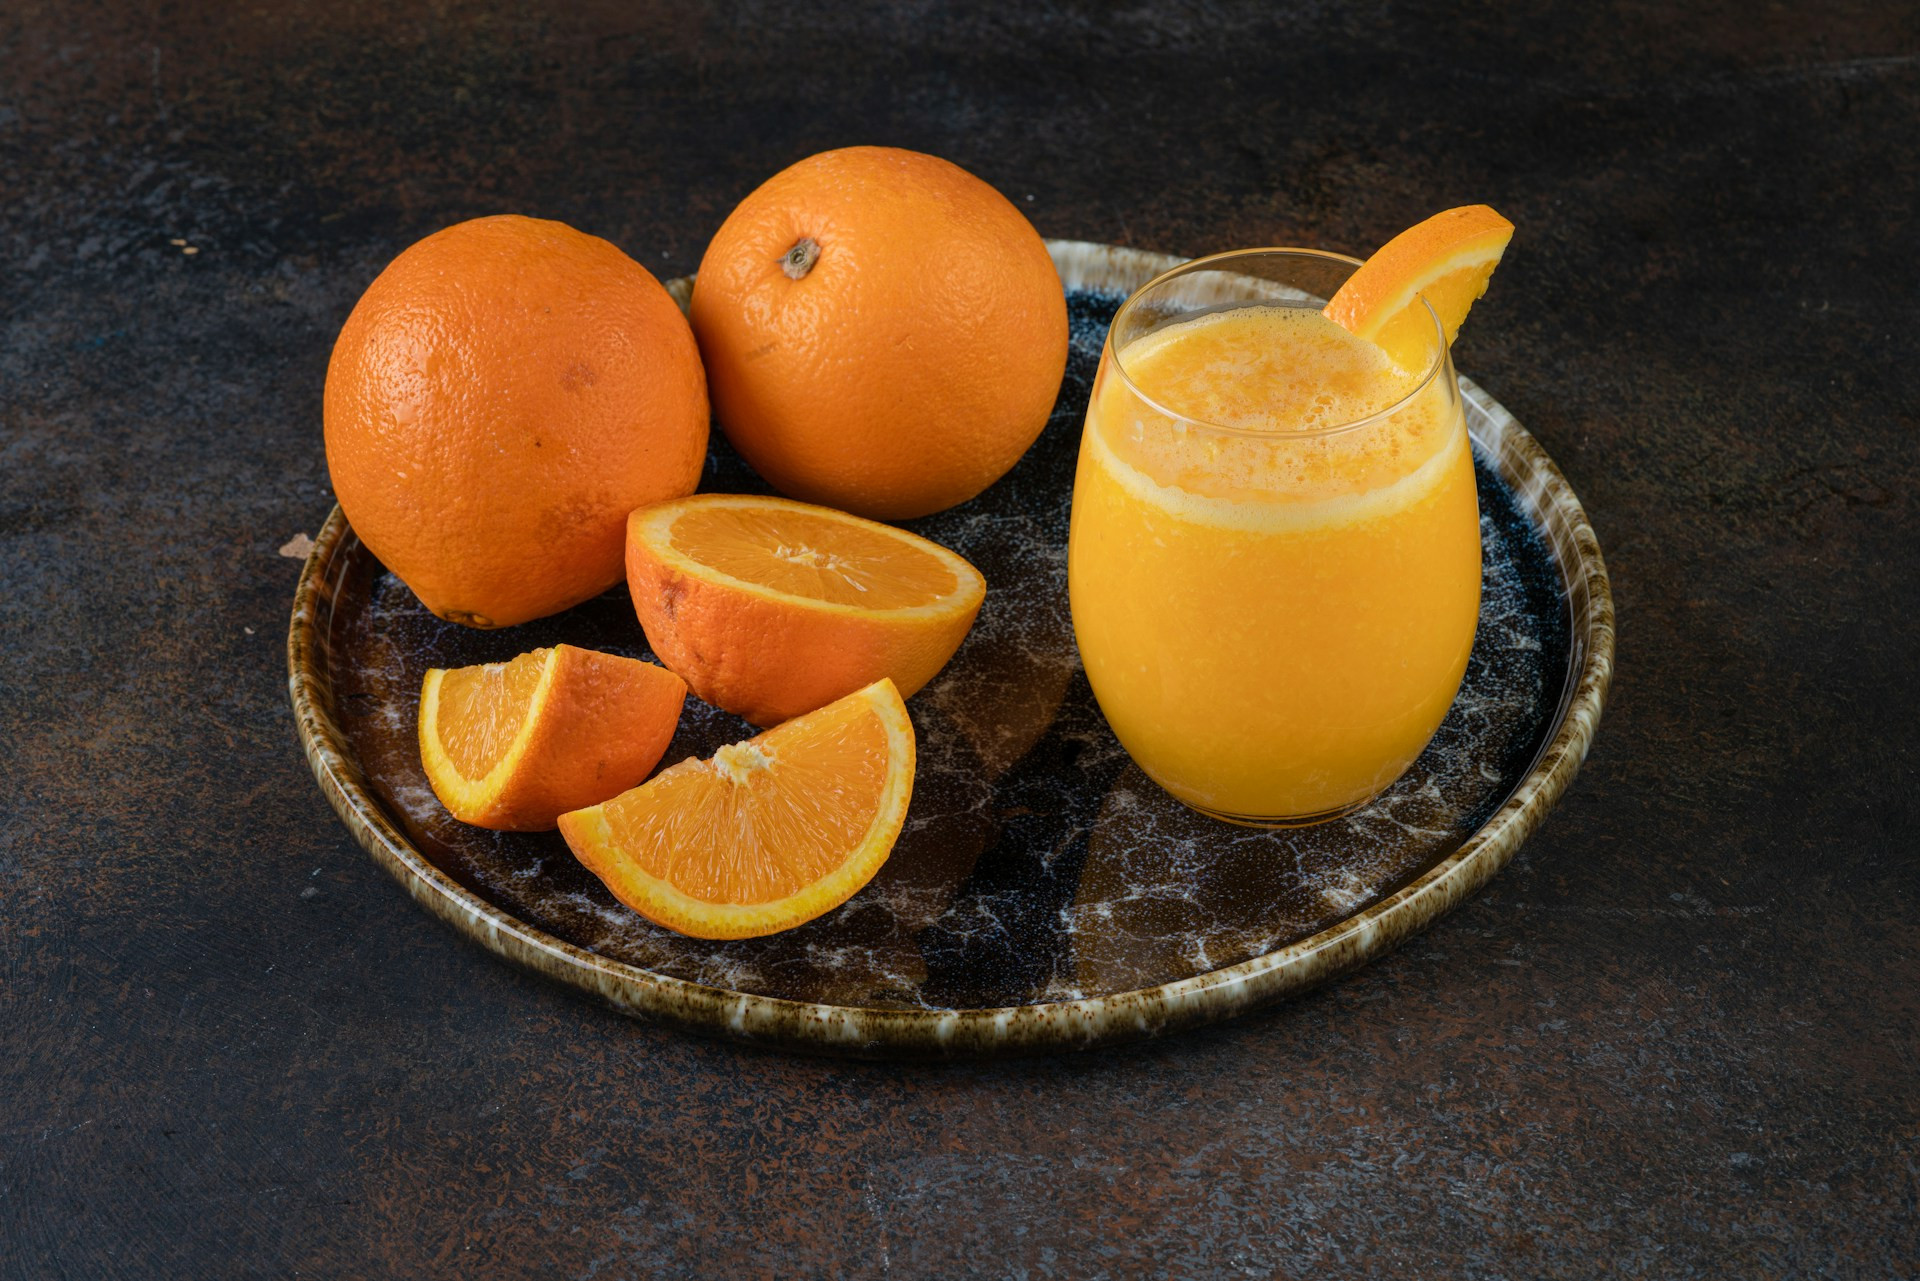  Un impulso de antioxidantes para tu salud gracias al zumo de naranja natural 